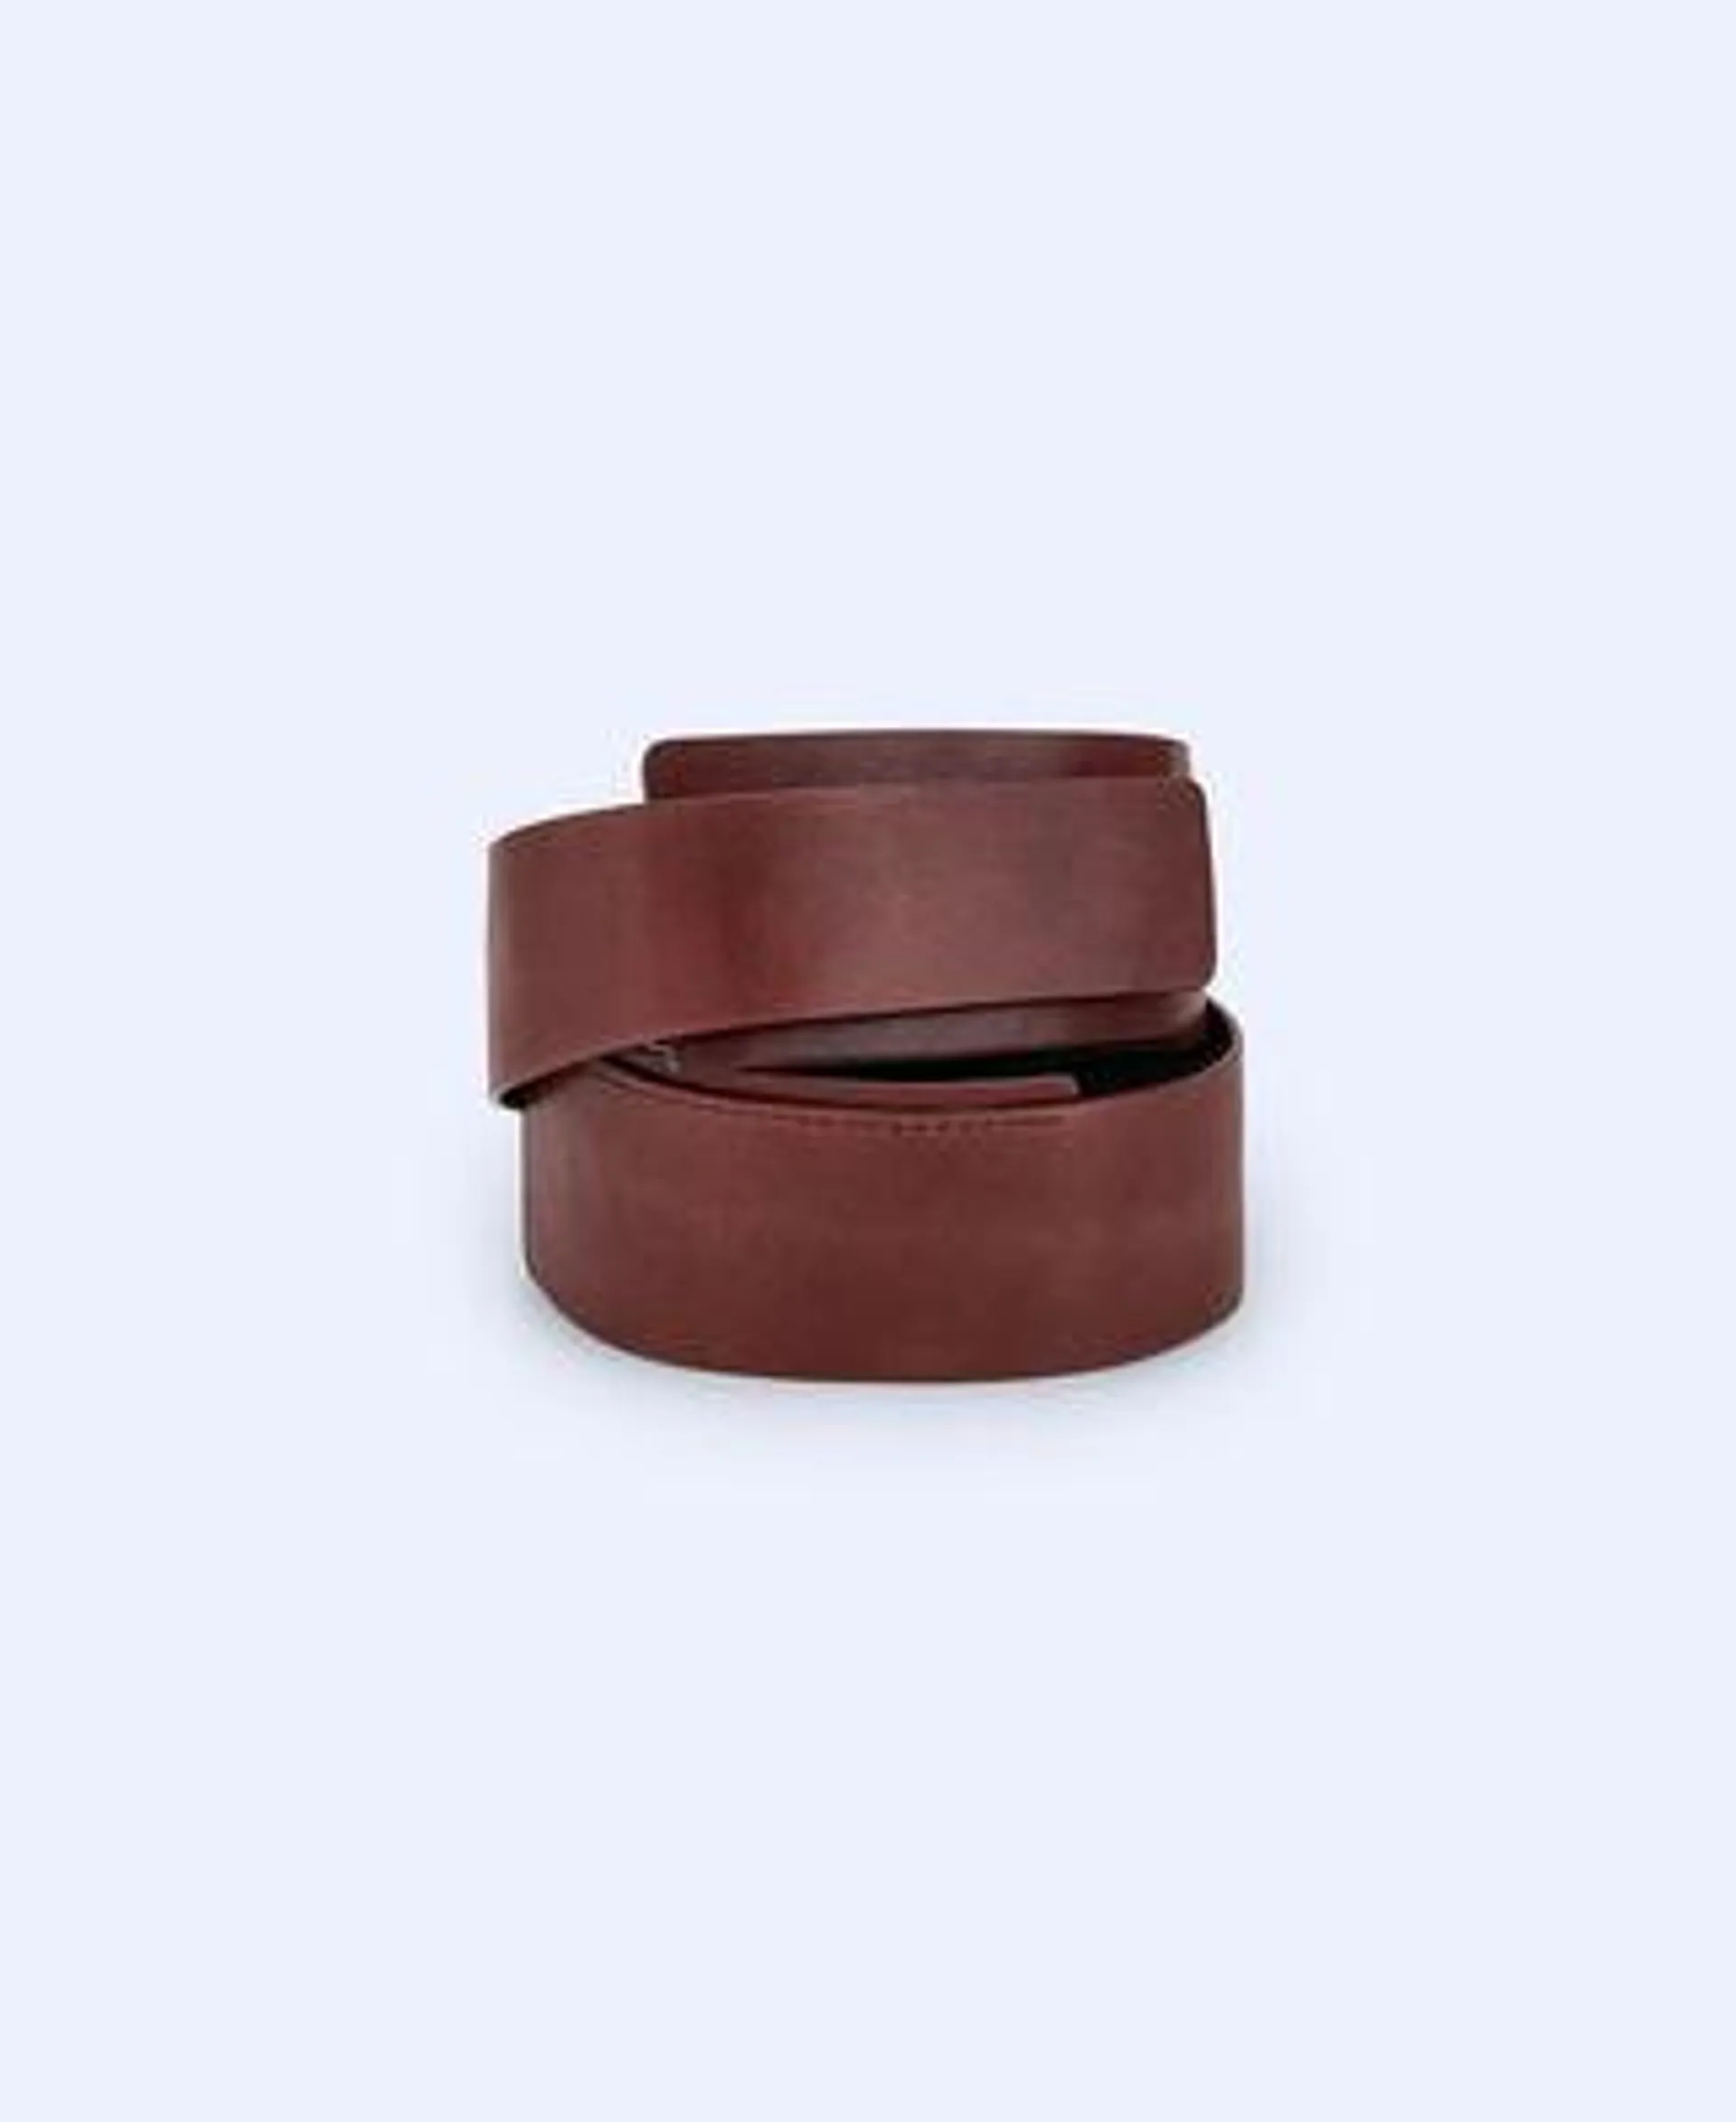 Vachetta leather sash